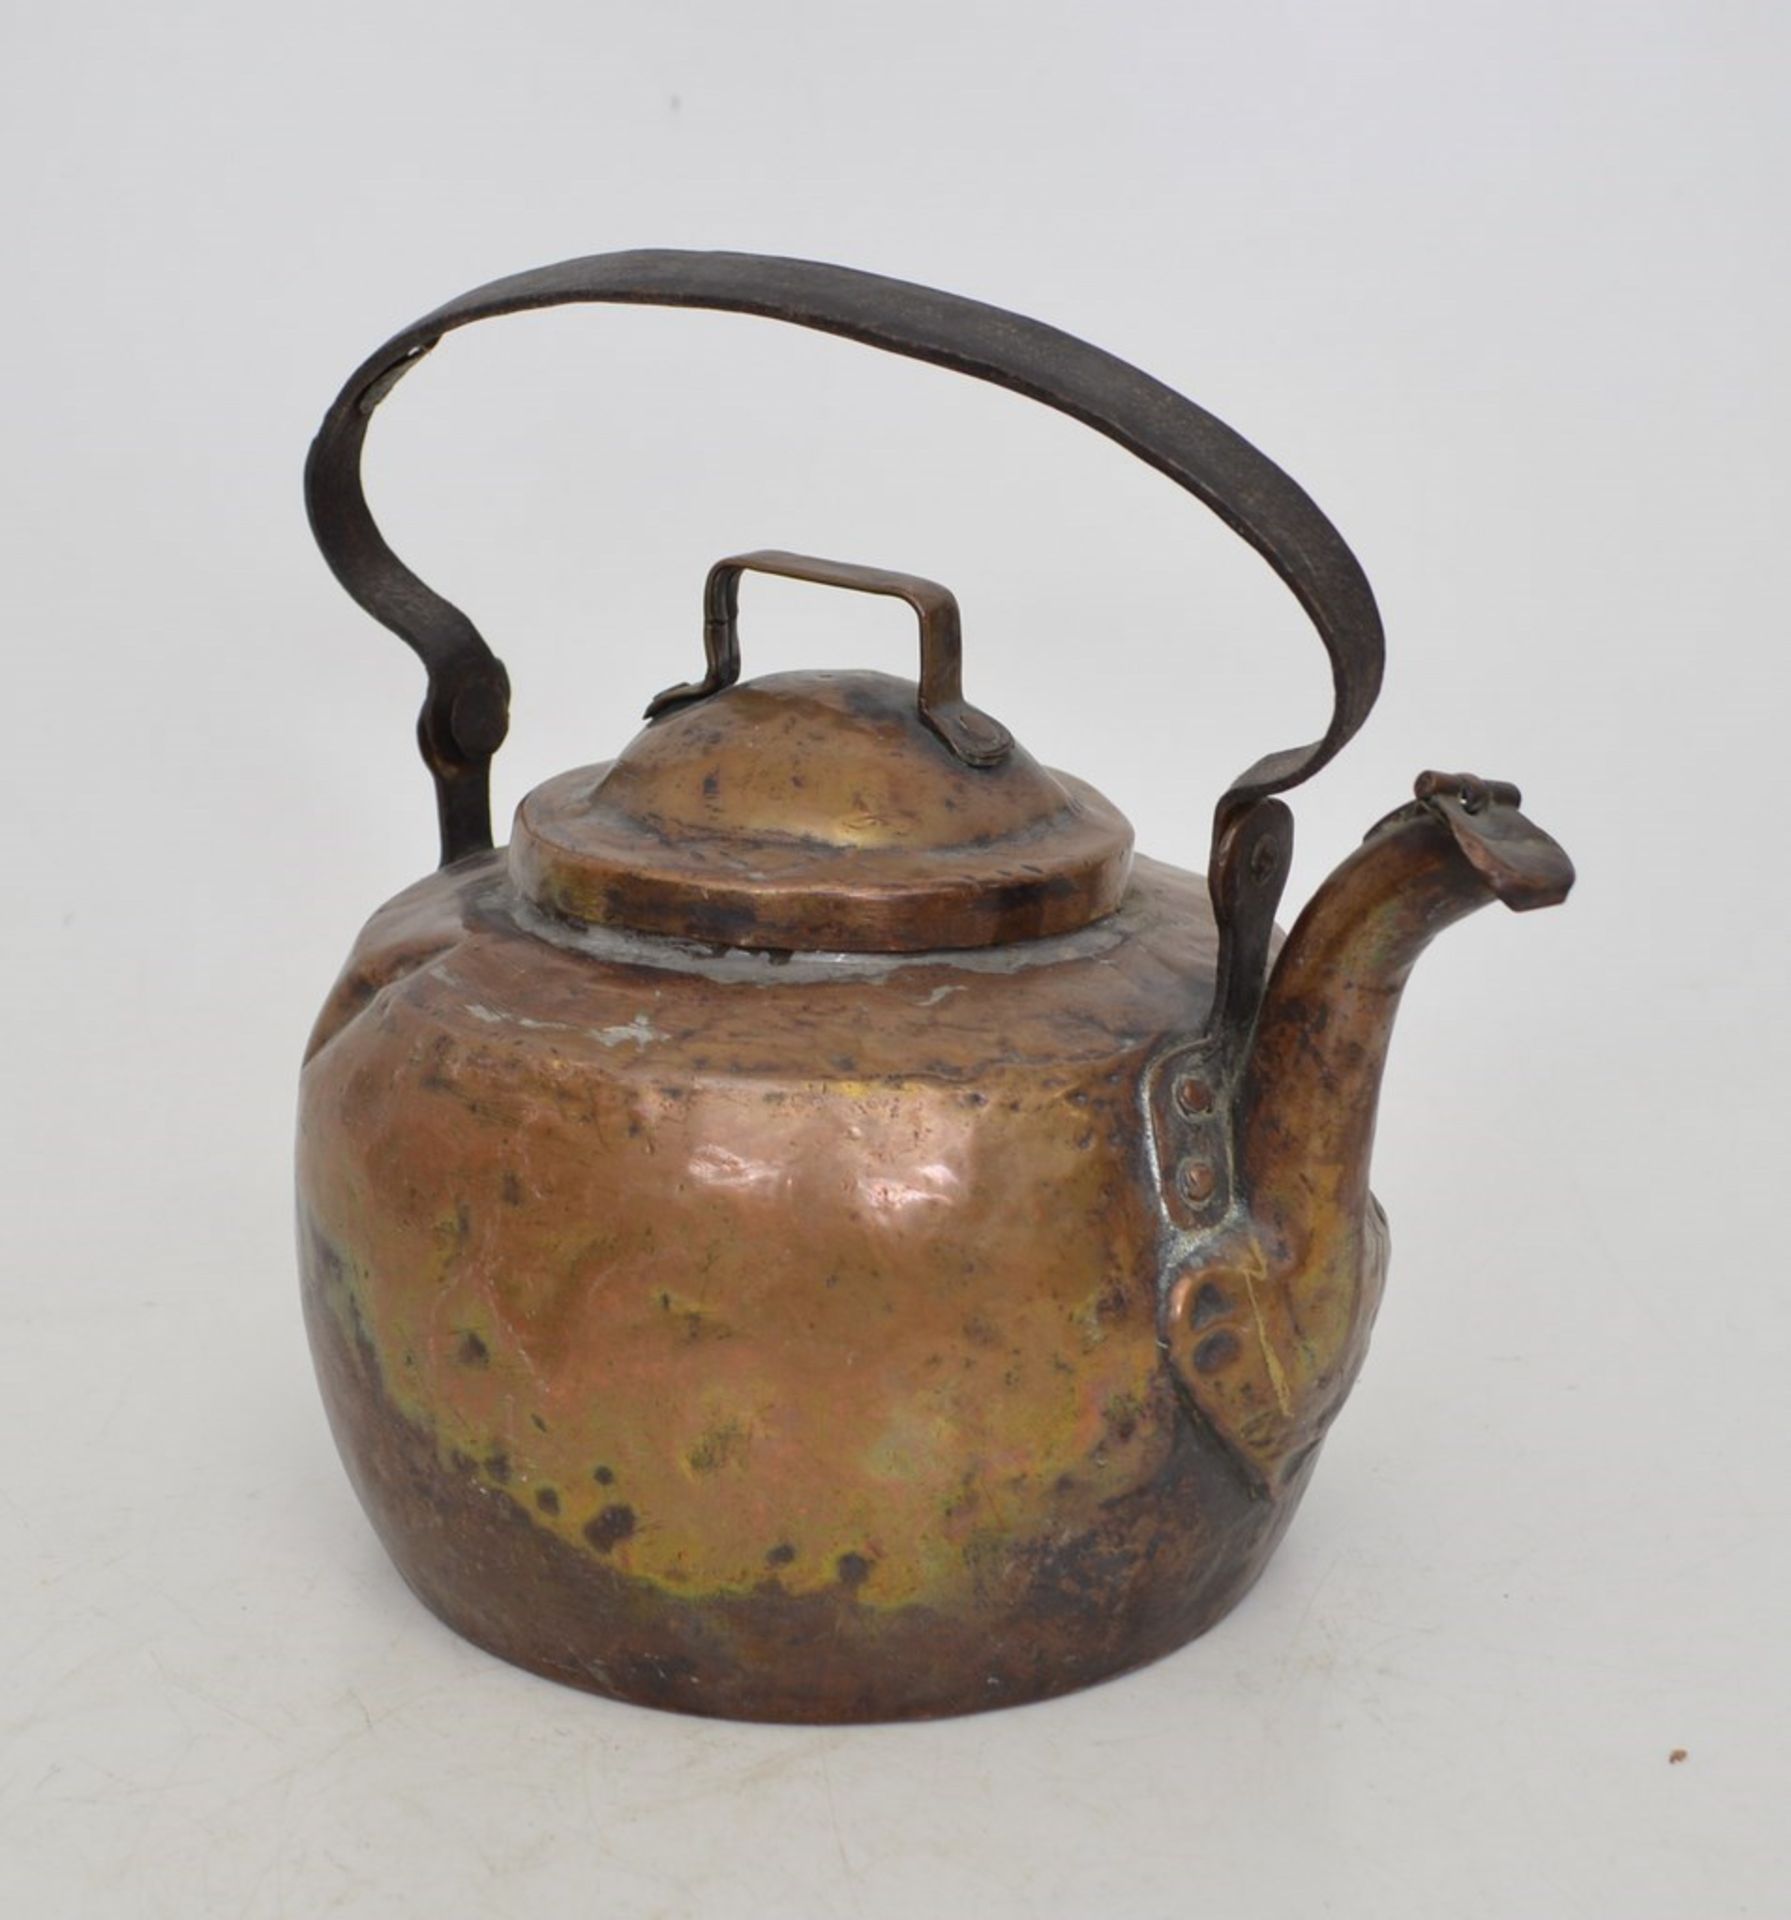 Wasserkessel  Kupfer, rund, leicht gebaucht, Eisengriff, H mit Griff 25 cm, 19. Jh.